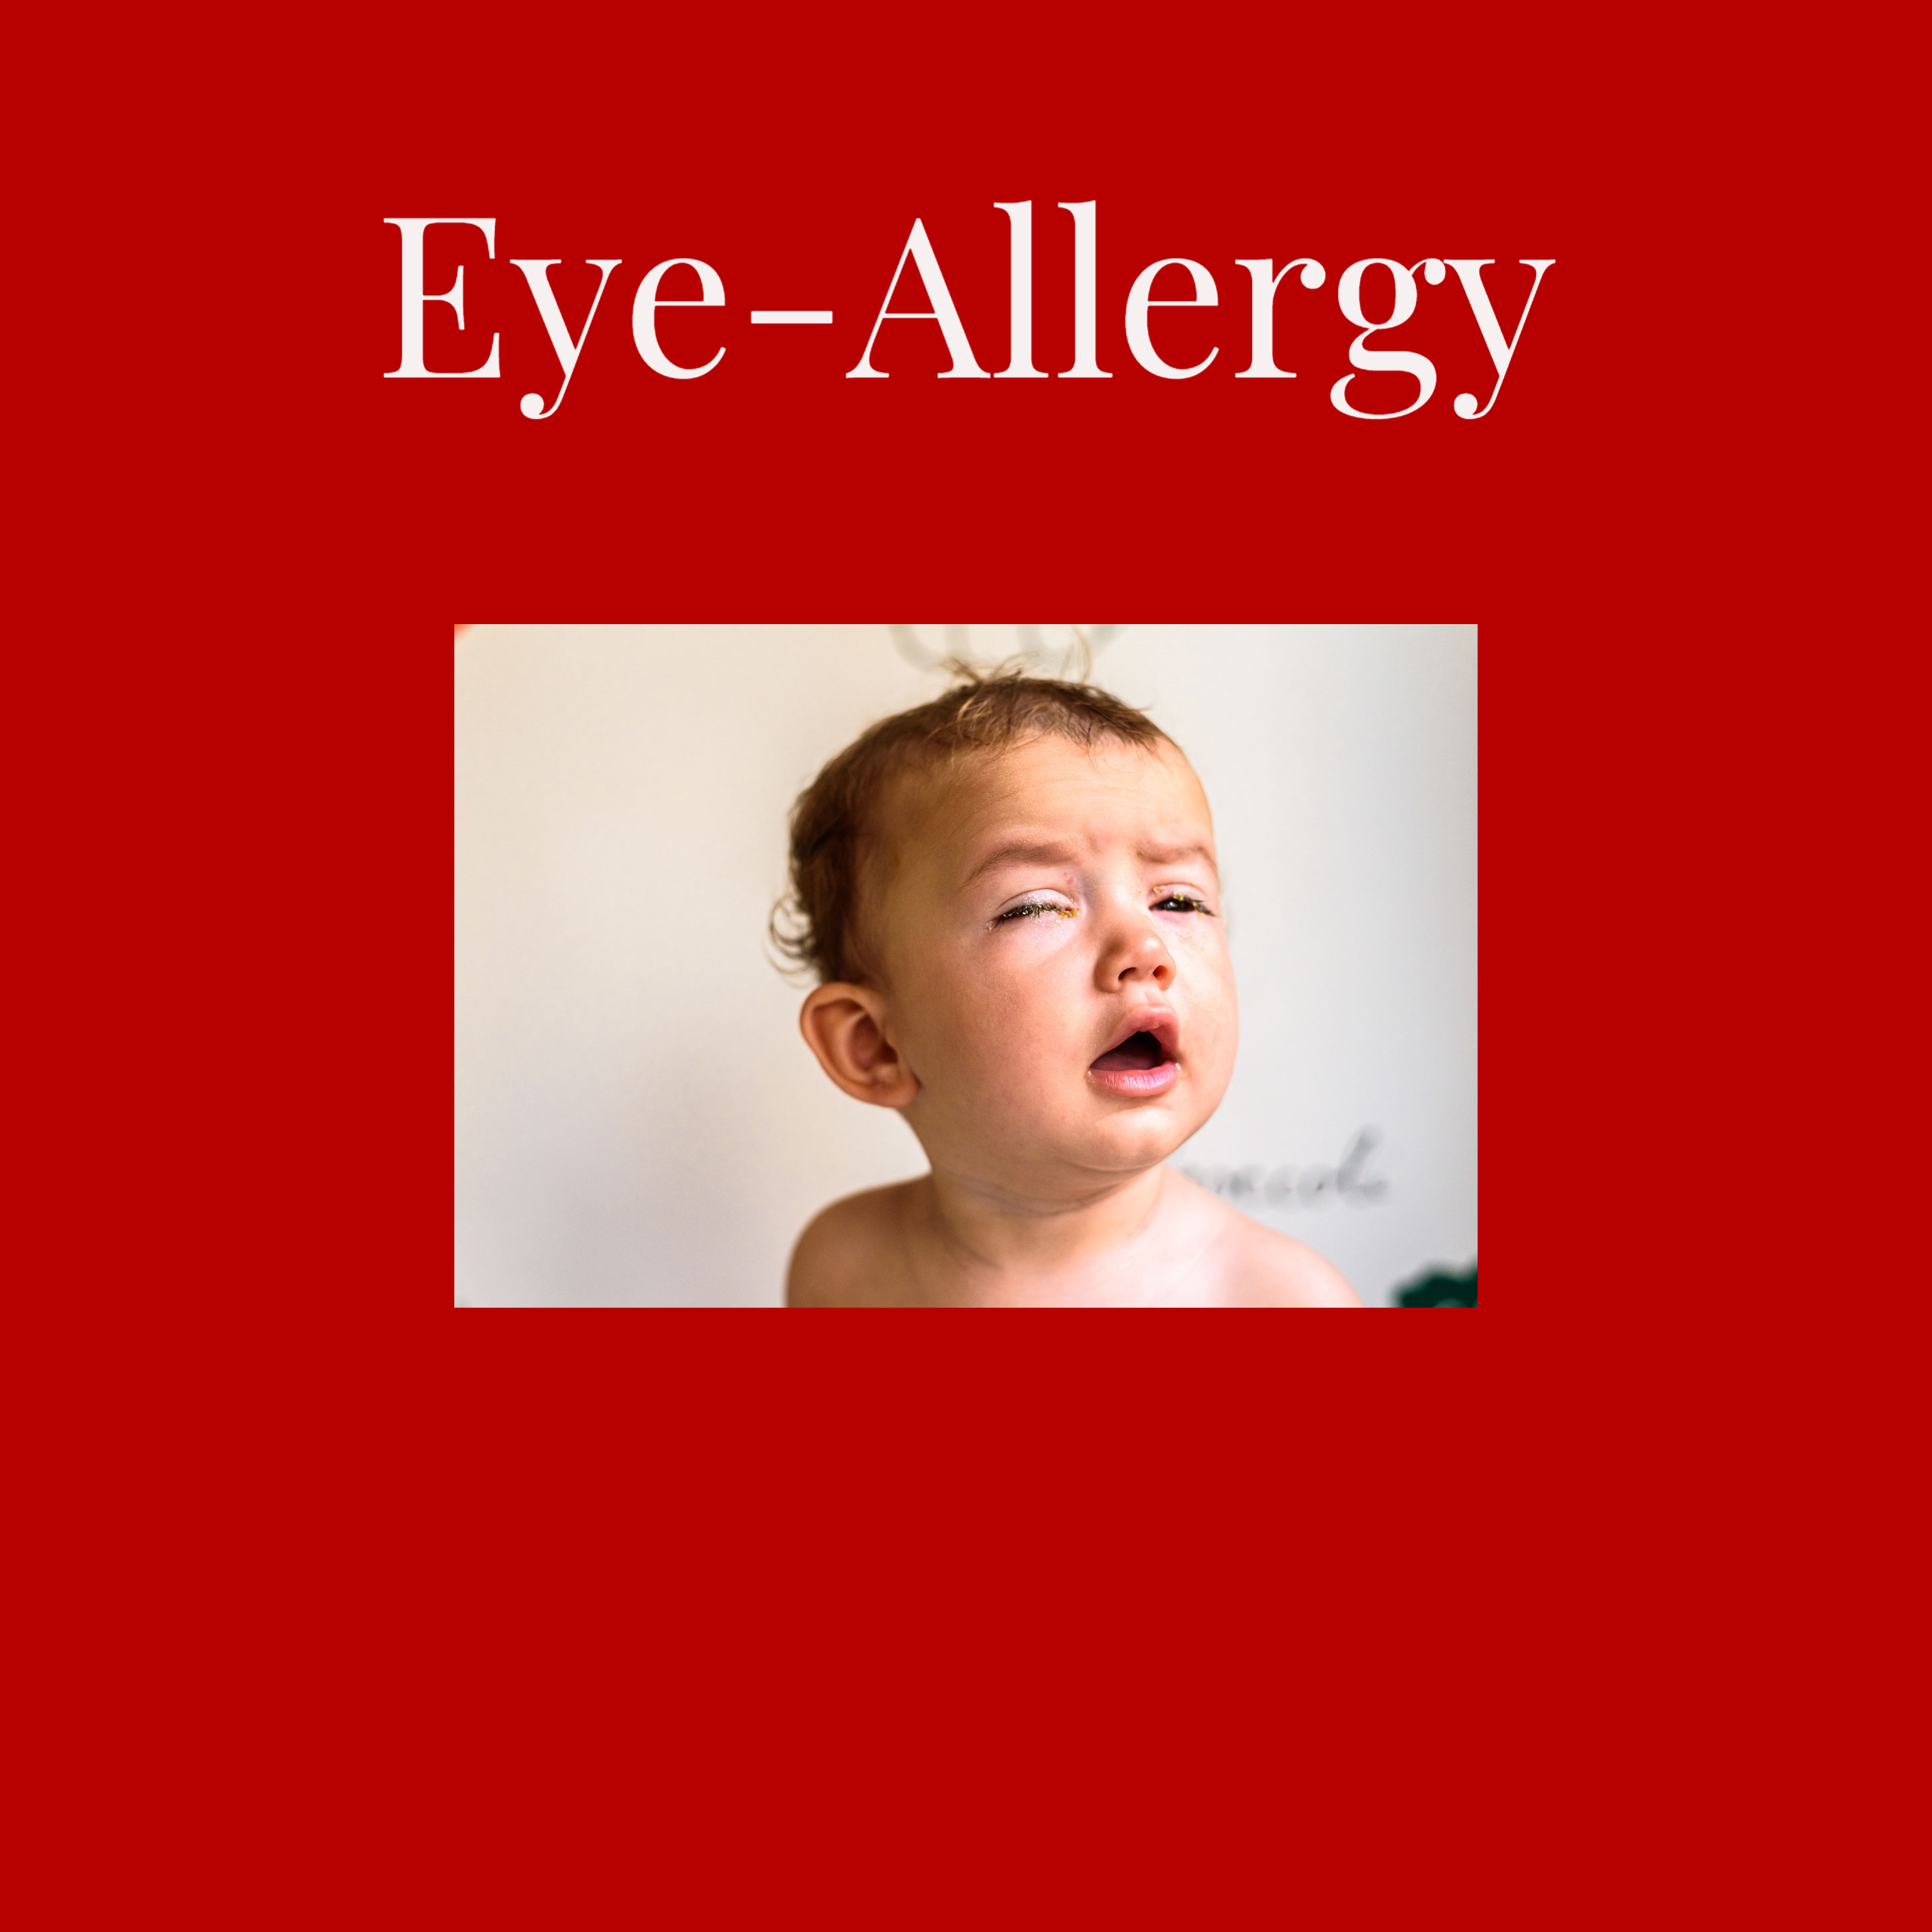 Eye – Allergy